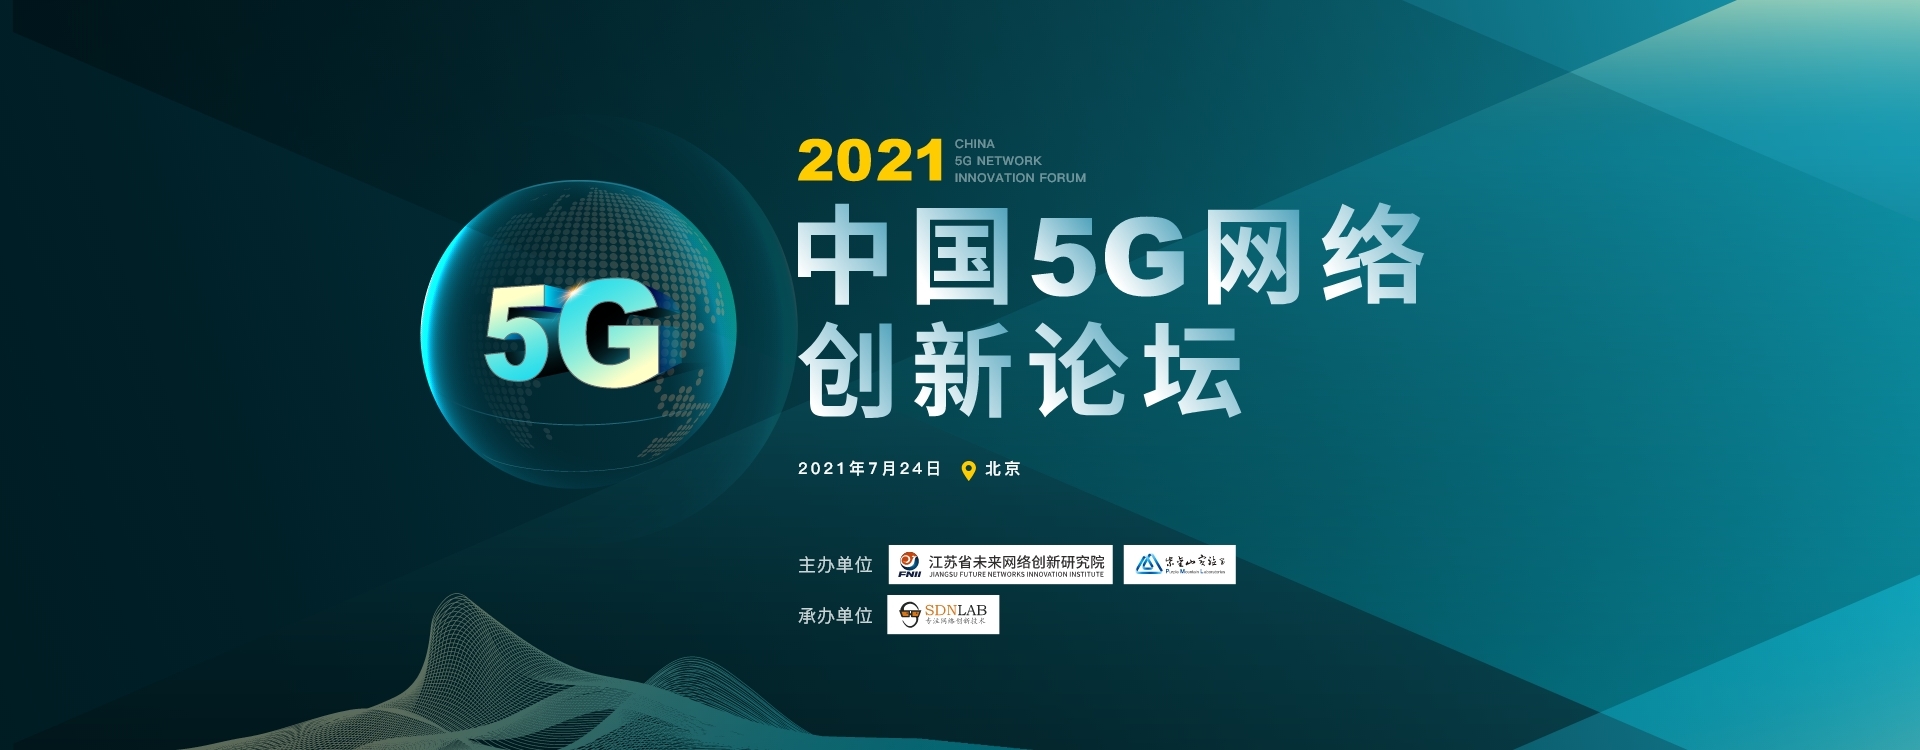 2021中国5G 网络创新论坛